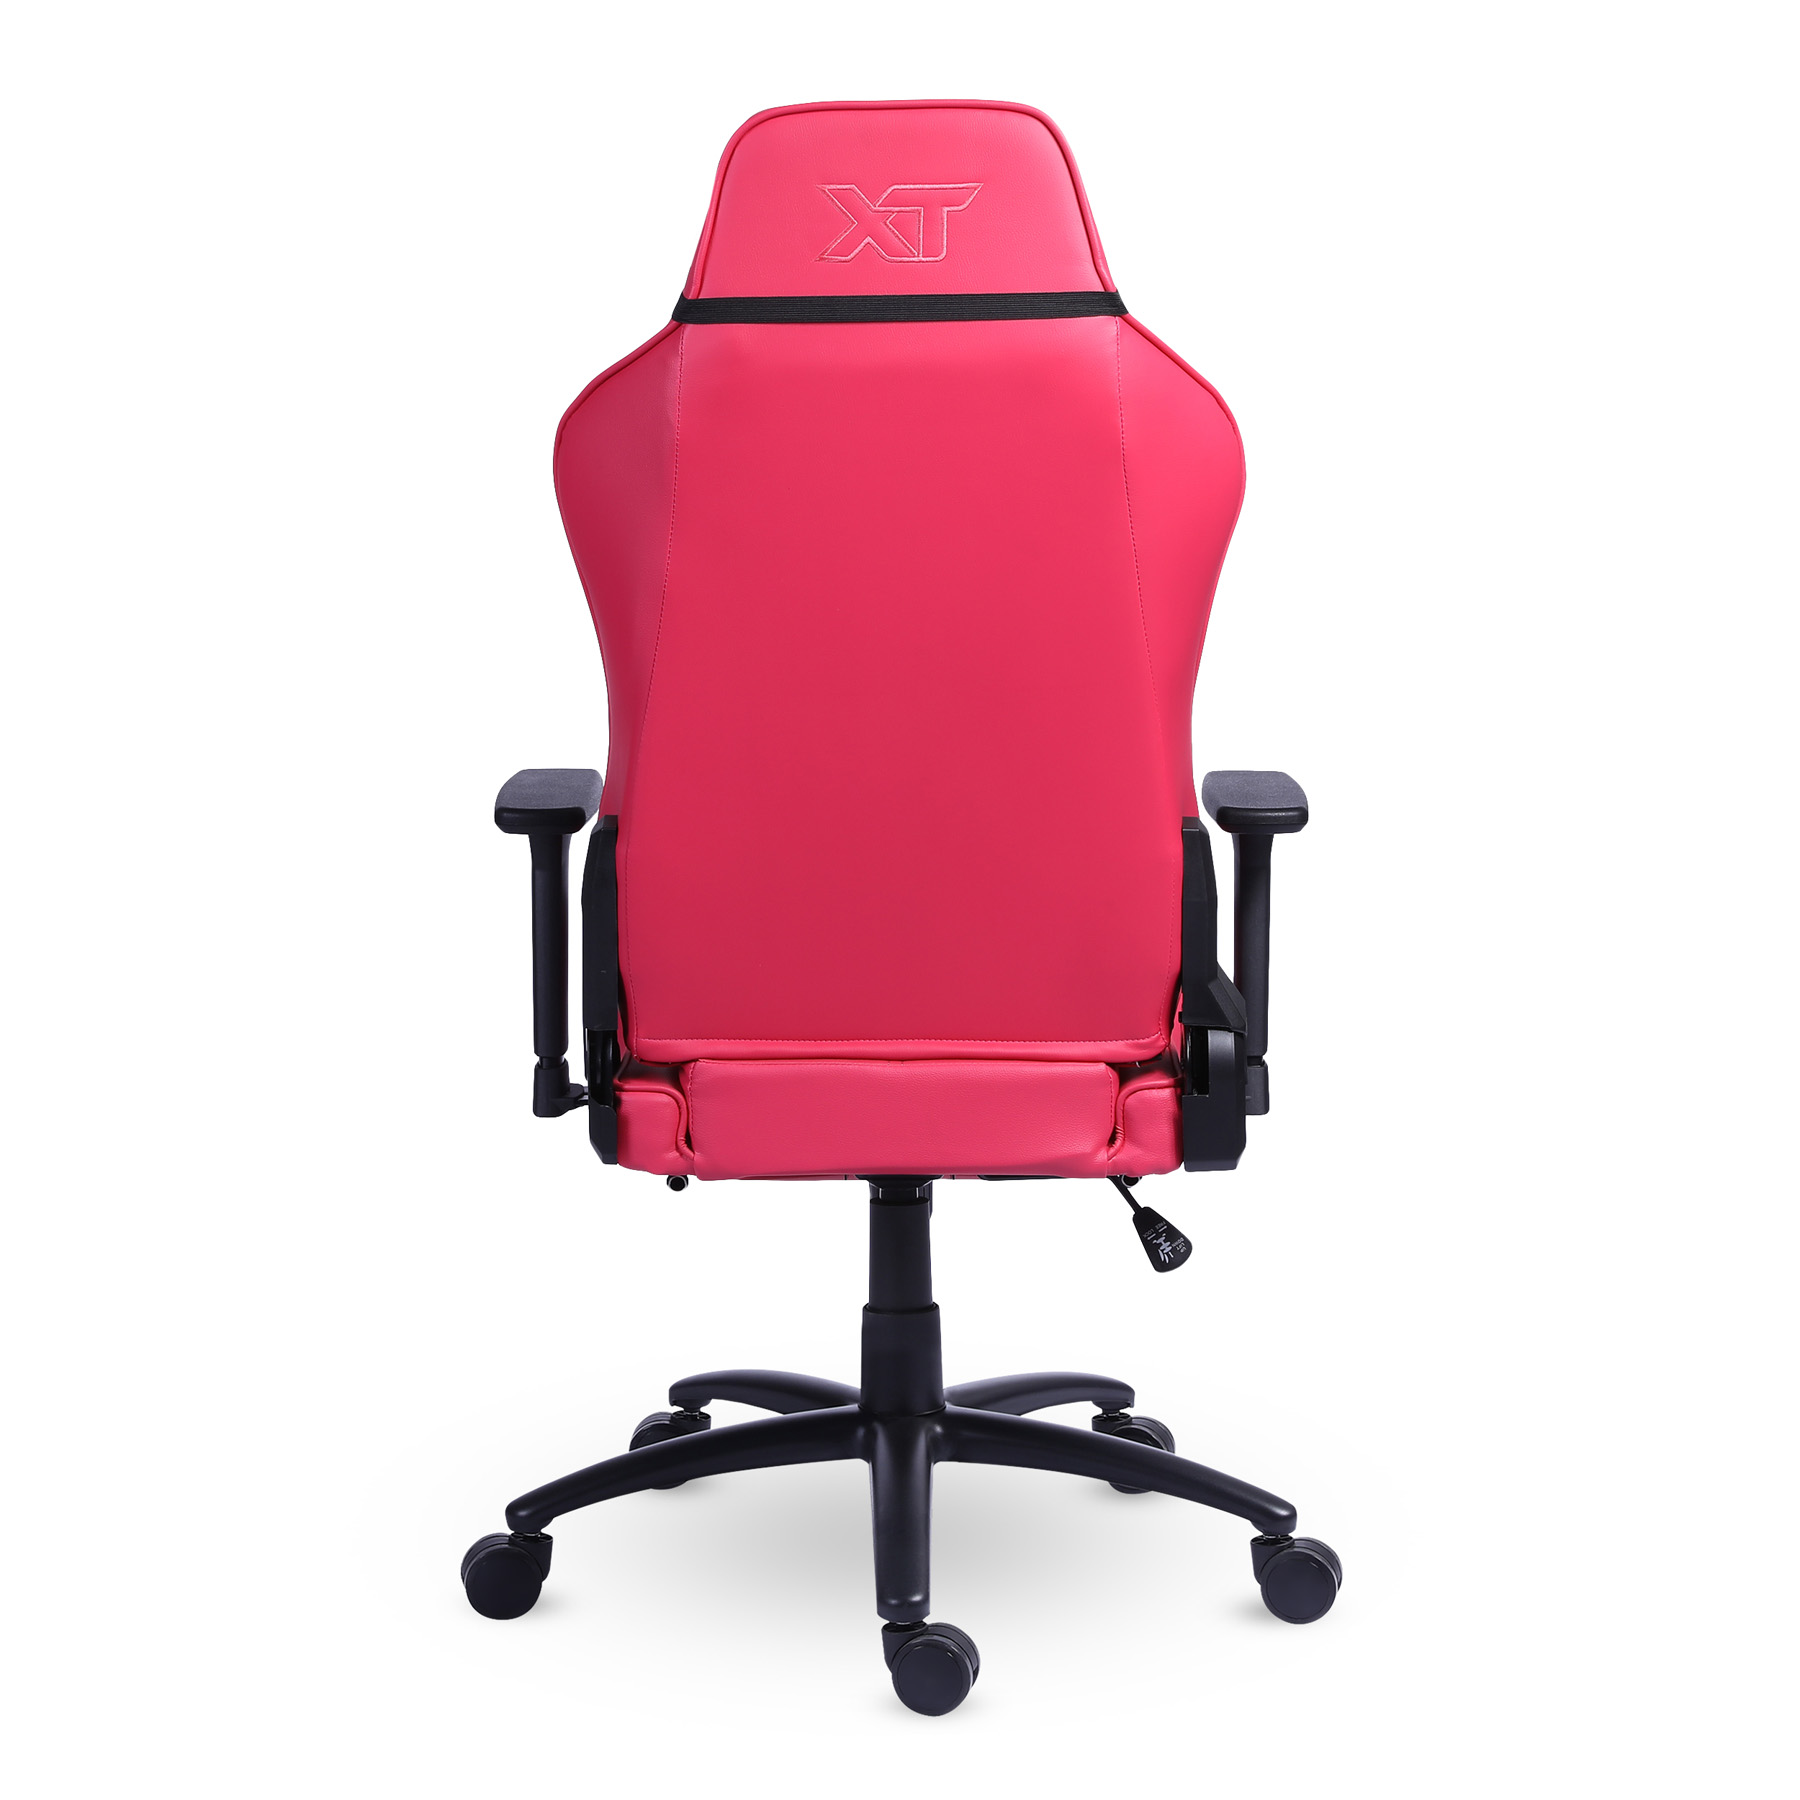 Cadeira Gamer XT Racer PLATINUM W Pink By Thiago Rosinhole - Arte 7/100 + Tapete Gamer de Brinde com nº de Série da Cadeira